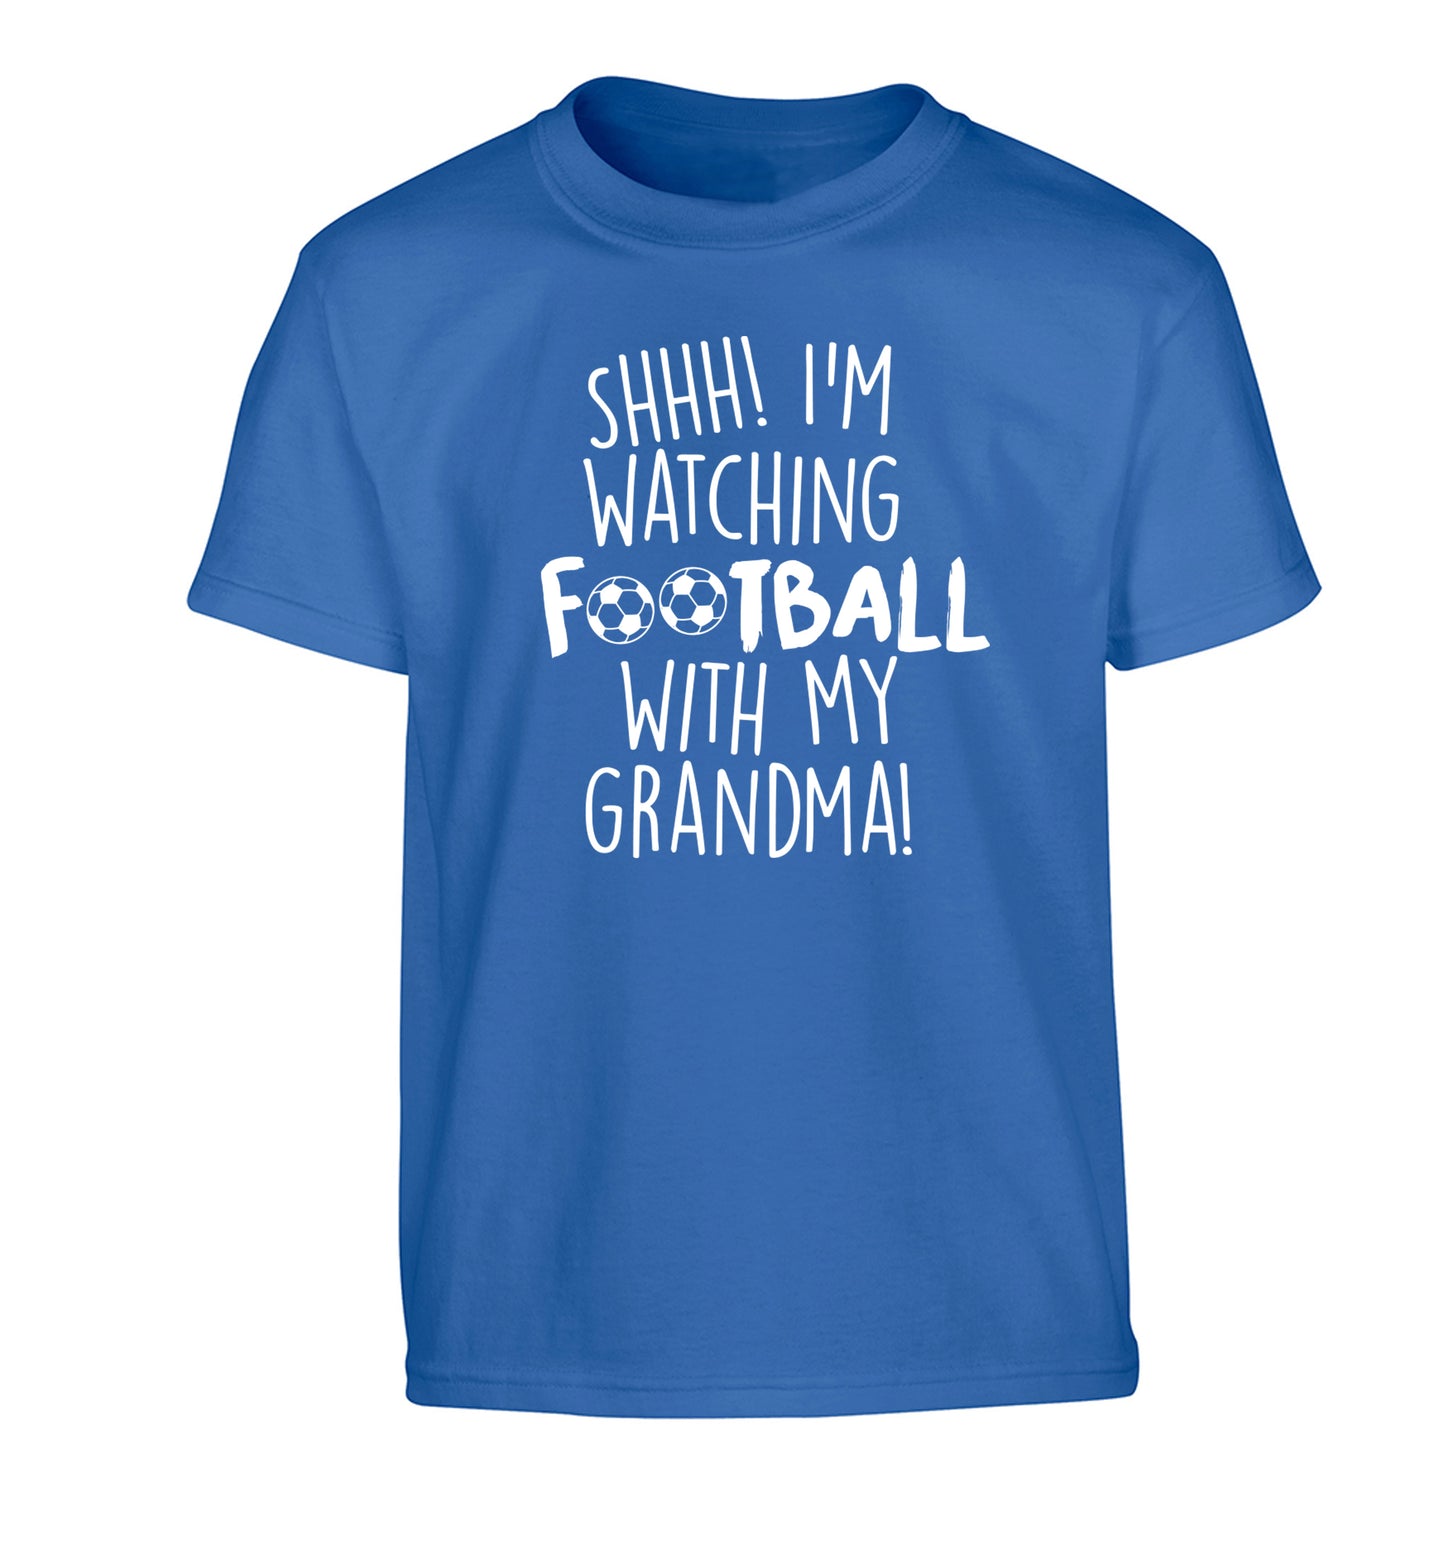 Shhh I'm watching football with my grandma Children's blue Tshirt 12-14 Years